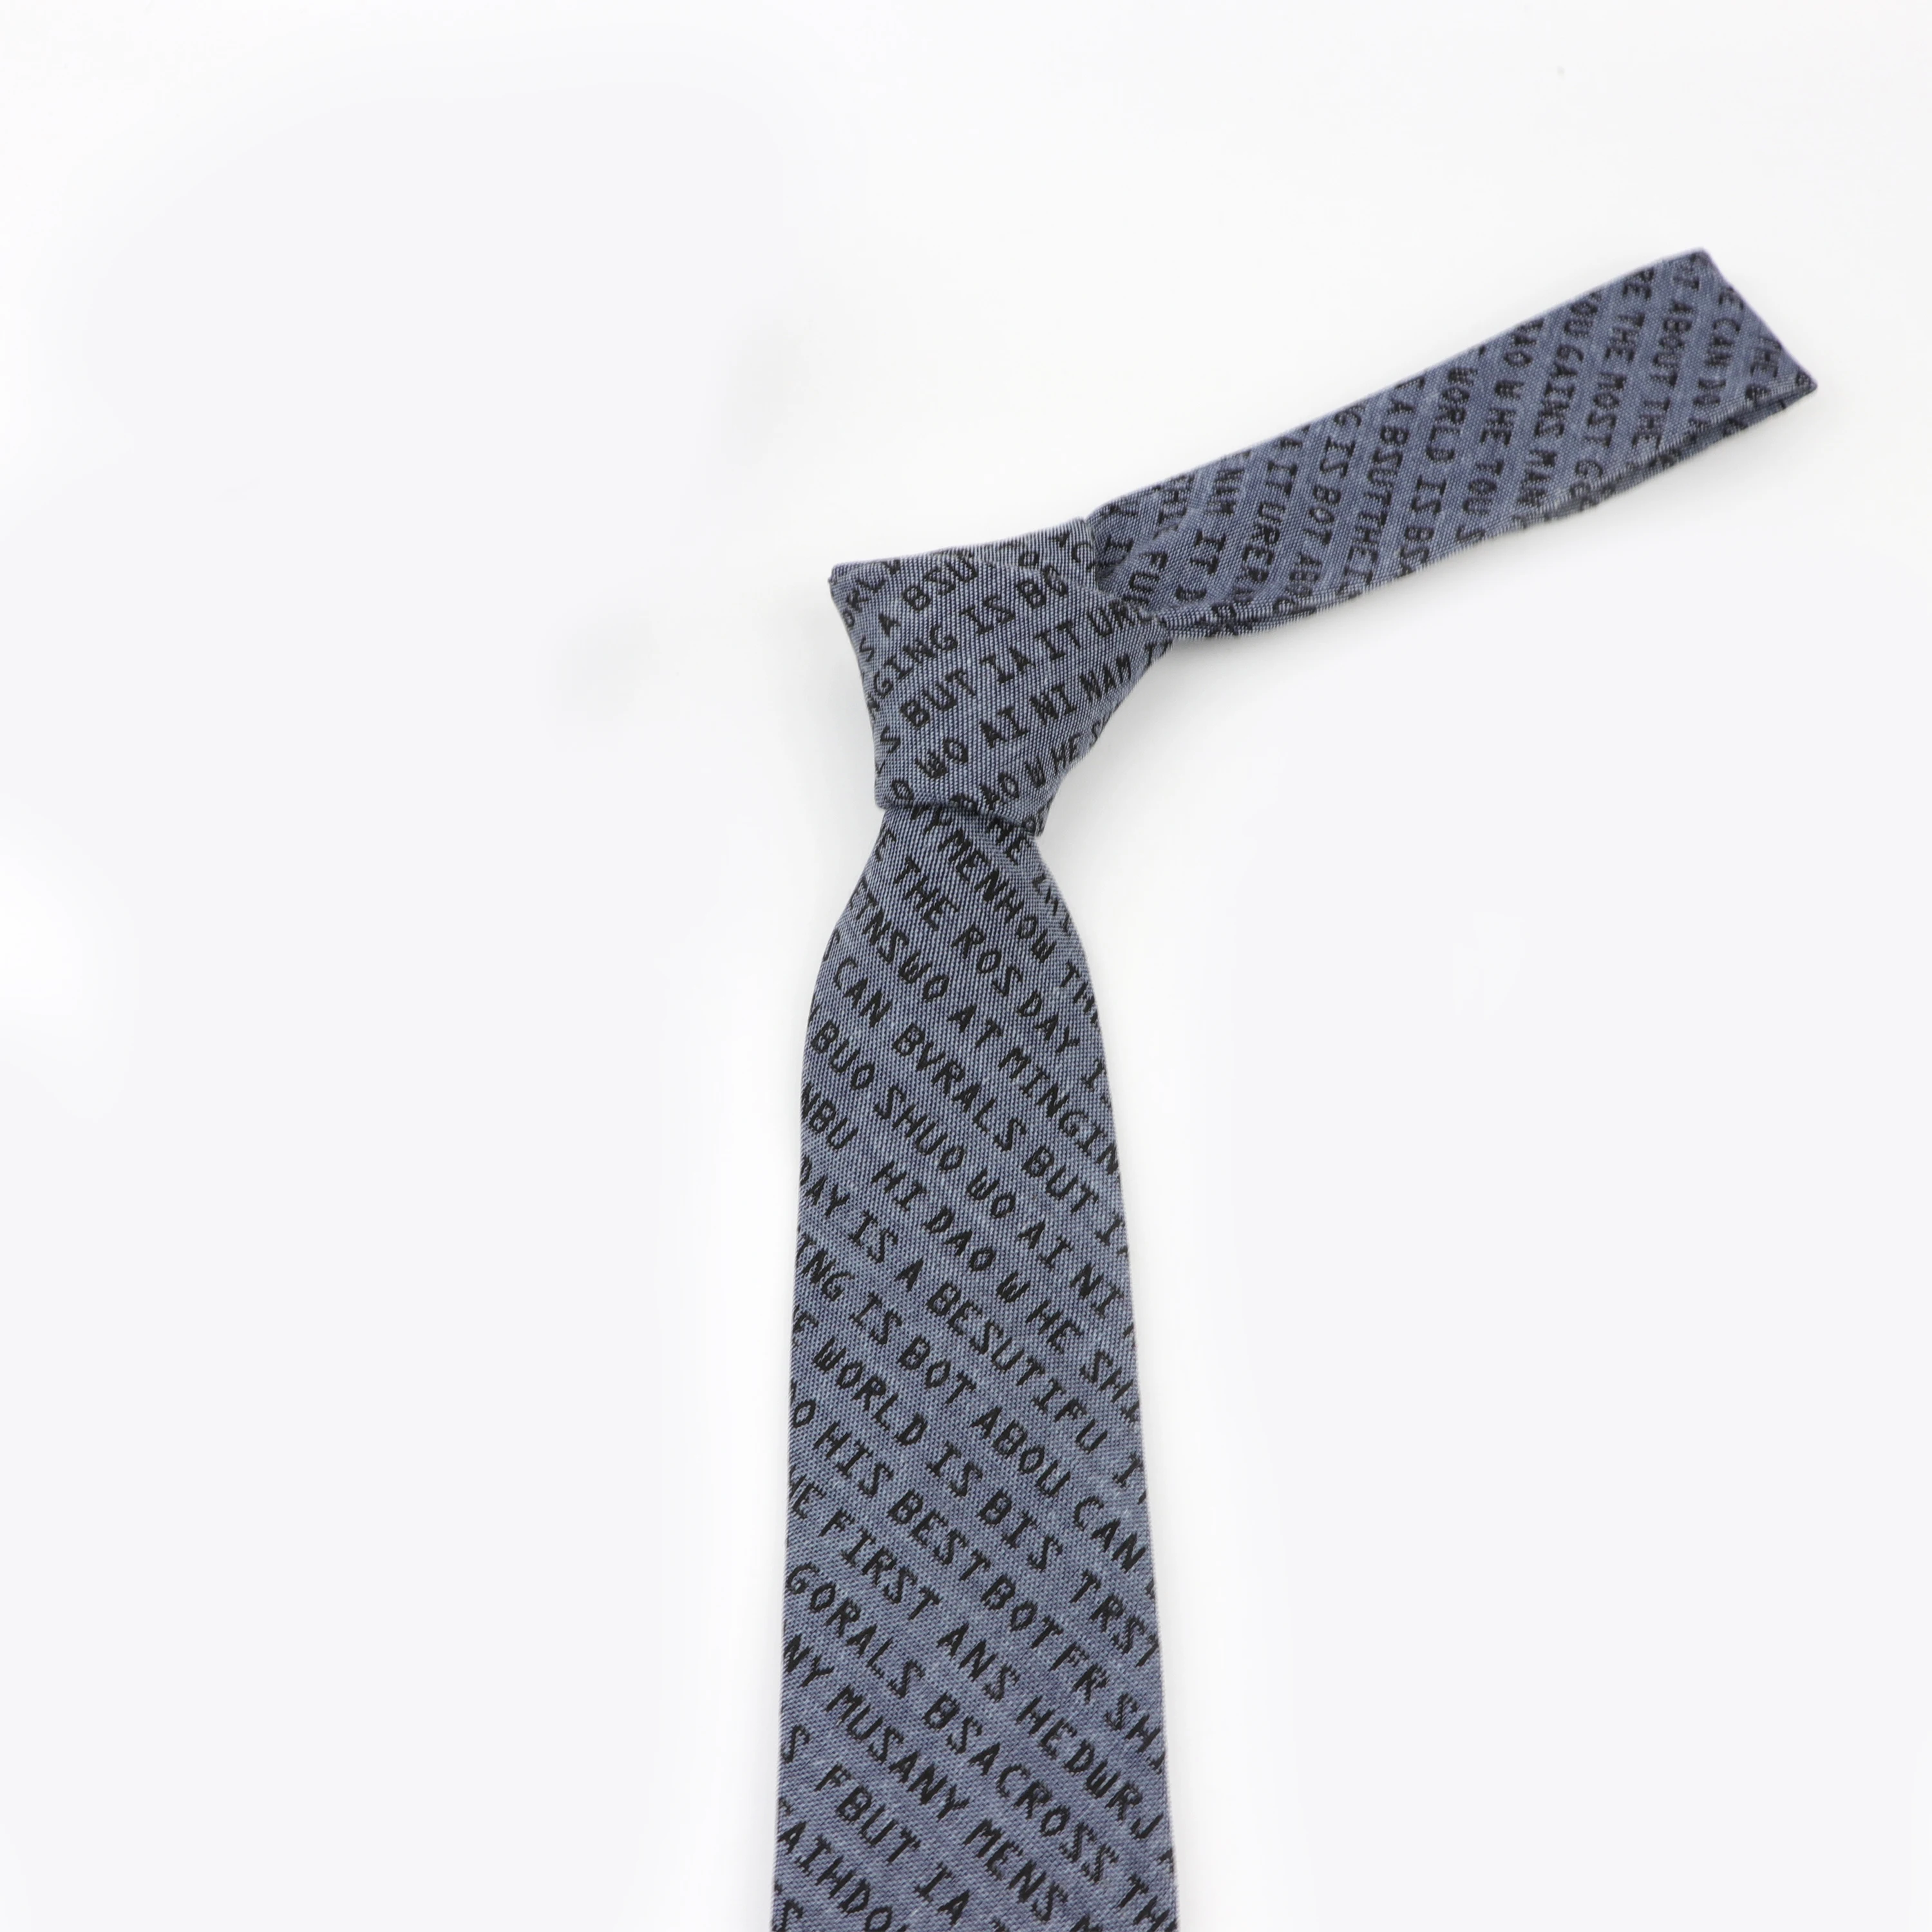 Галстук с рисунком букв, ширина 7 см, хлопковый галстук, повседневные разноцветные галстуки, модный Индивидуальный мужской галстук